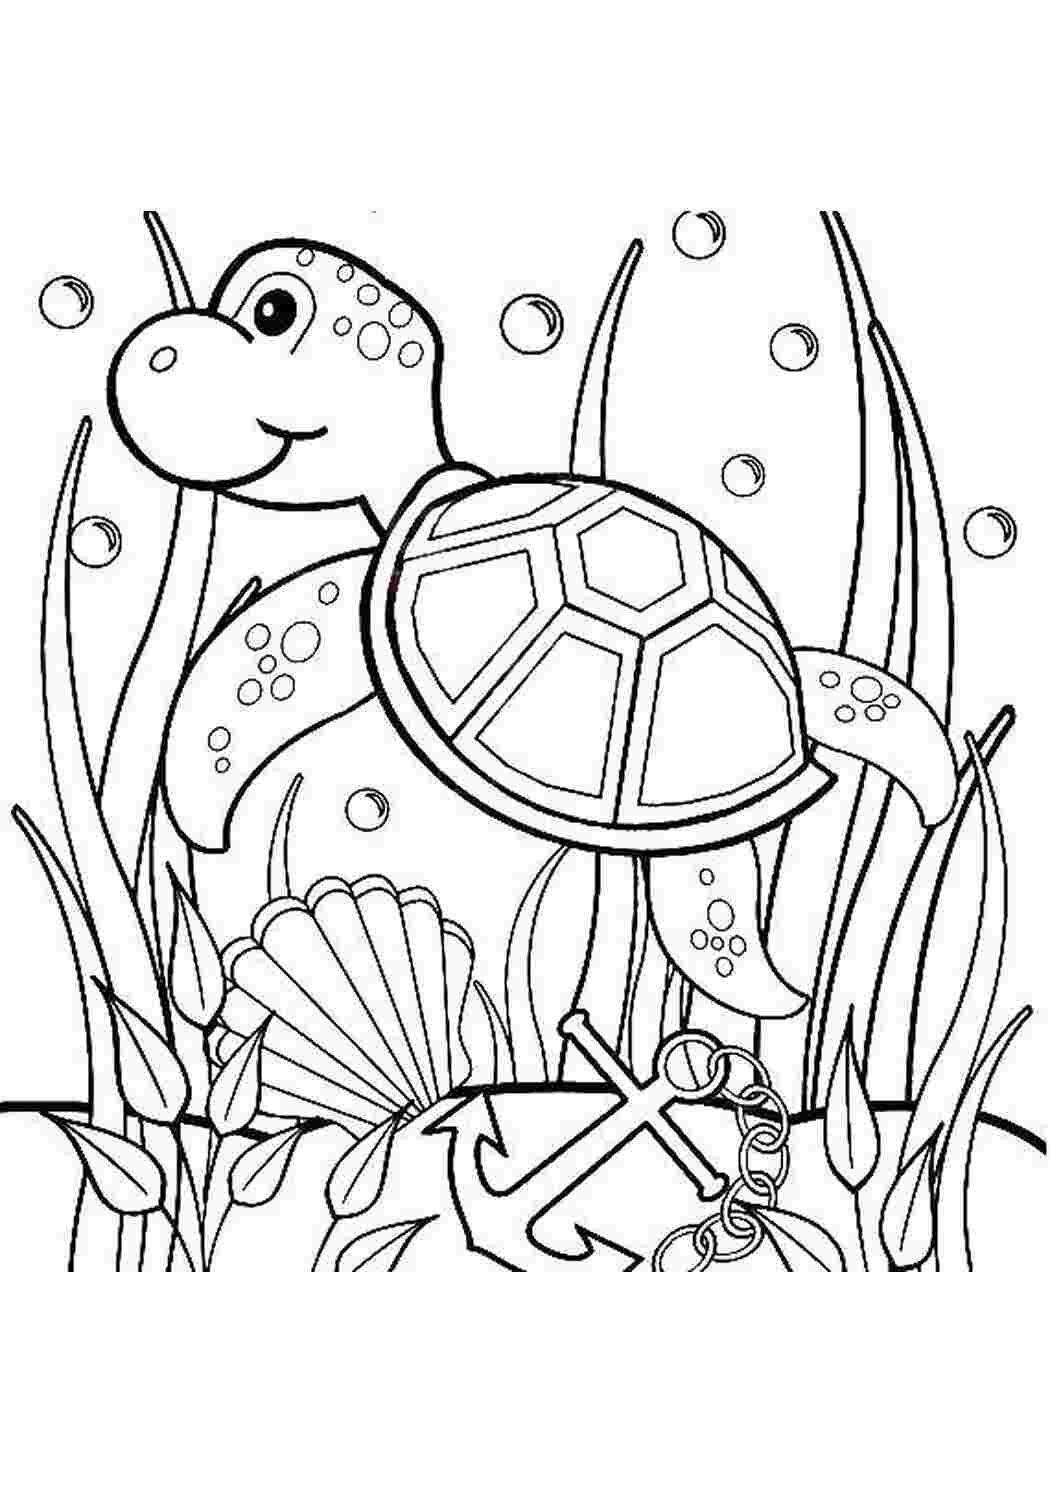 Черепаха в аквариуме рисунок детский